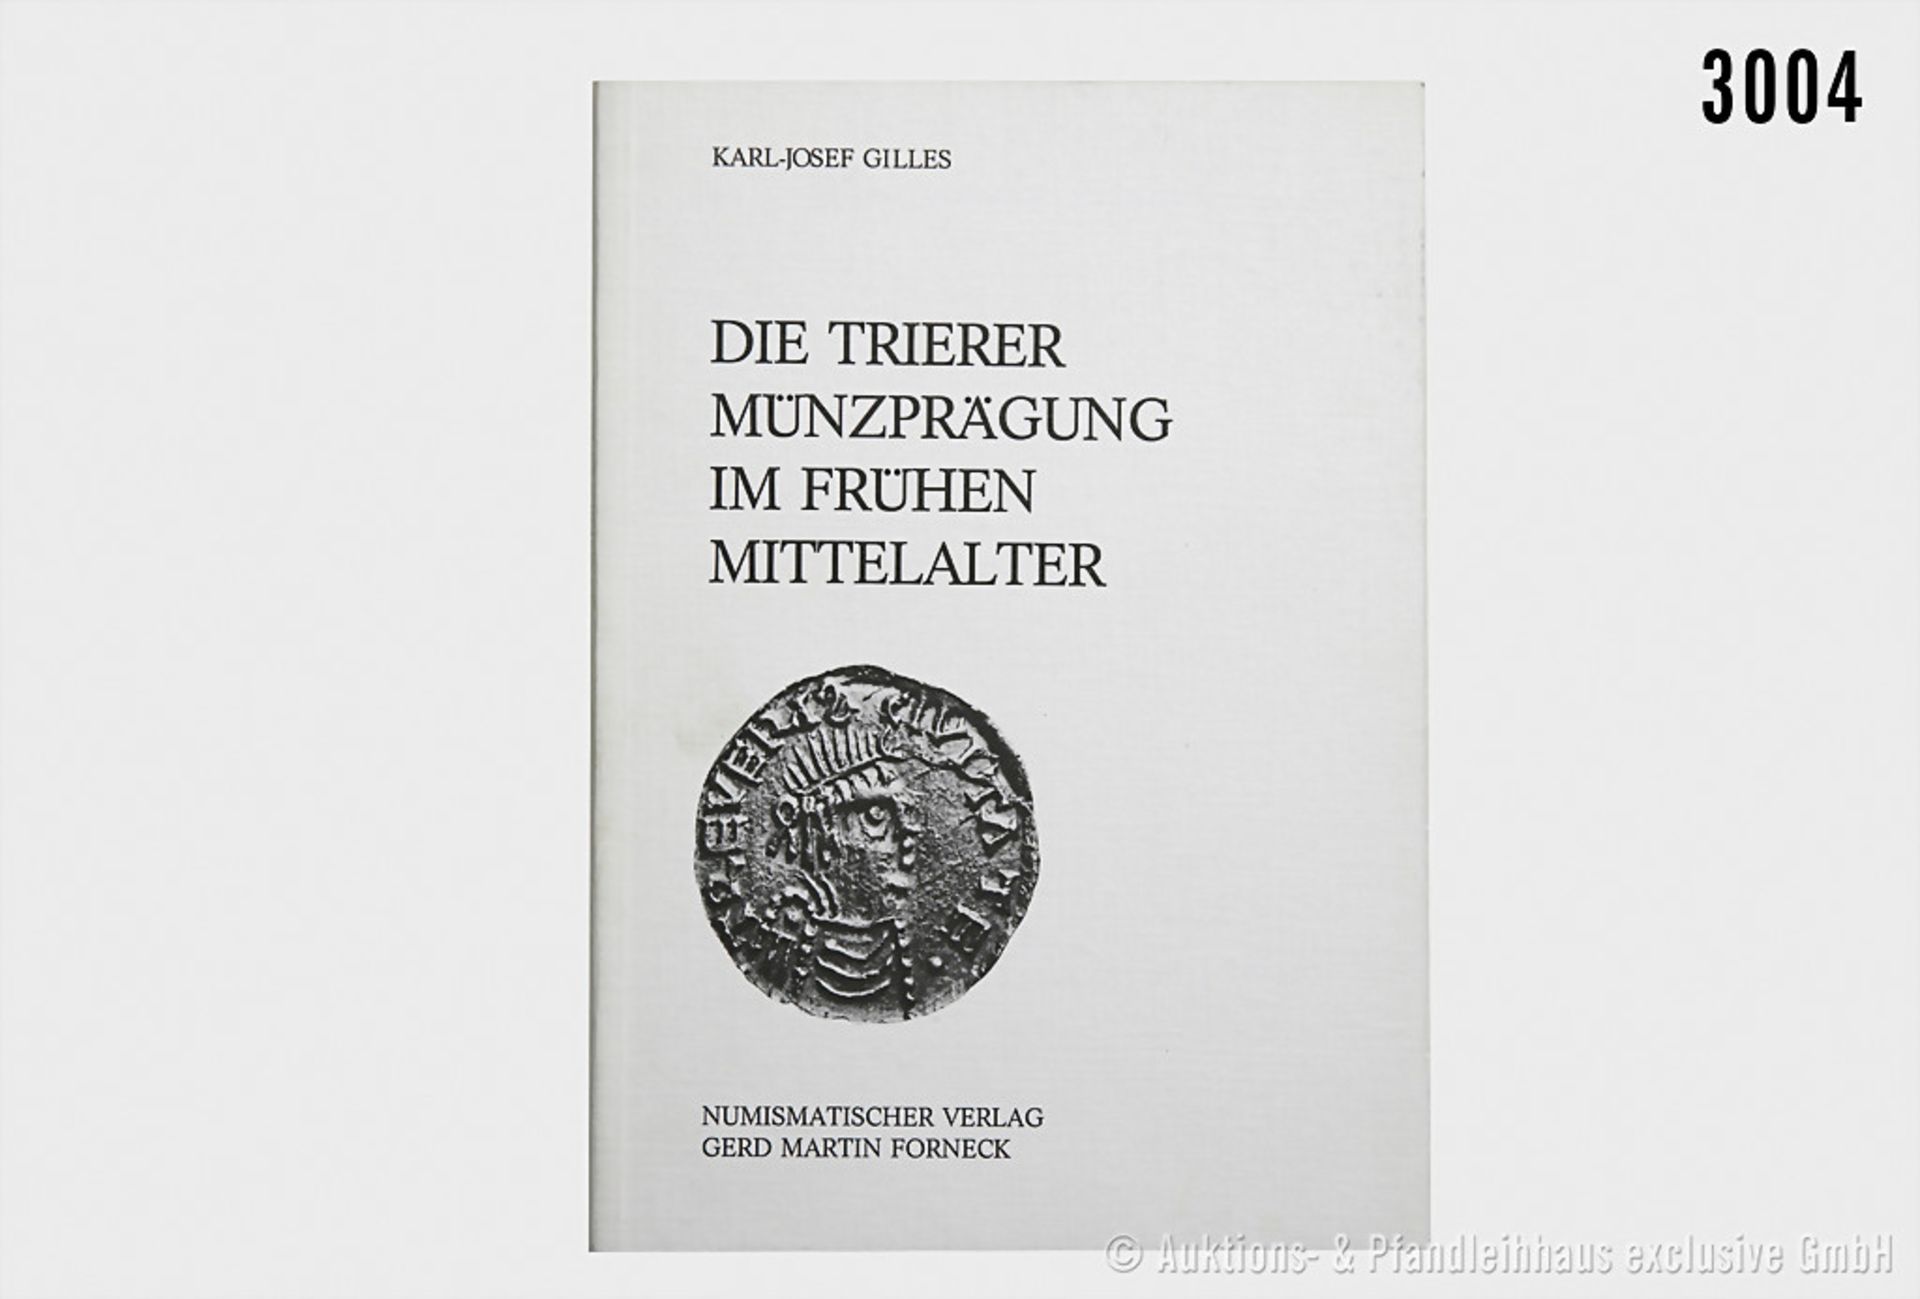 Fachbuch: Karl-Josef Gilles, Die Trierer Münzprägung im frühen Mittelalter, Numismatischer Verlag